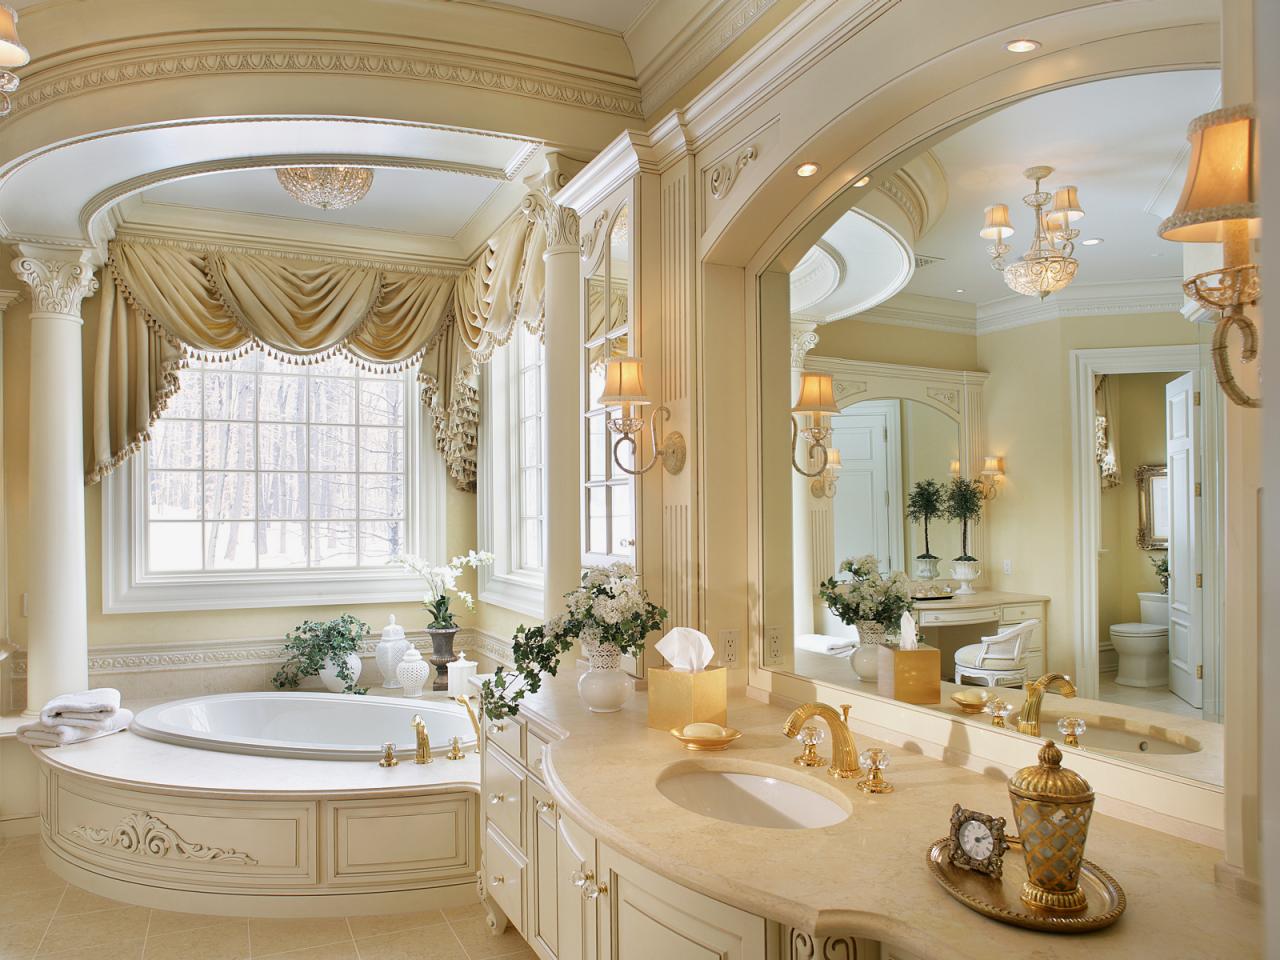 Romantiskt badrum i guld